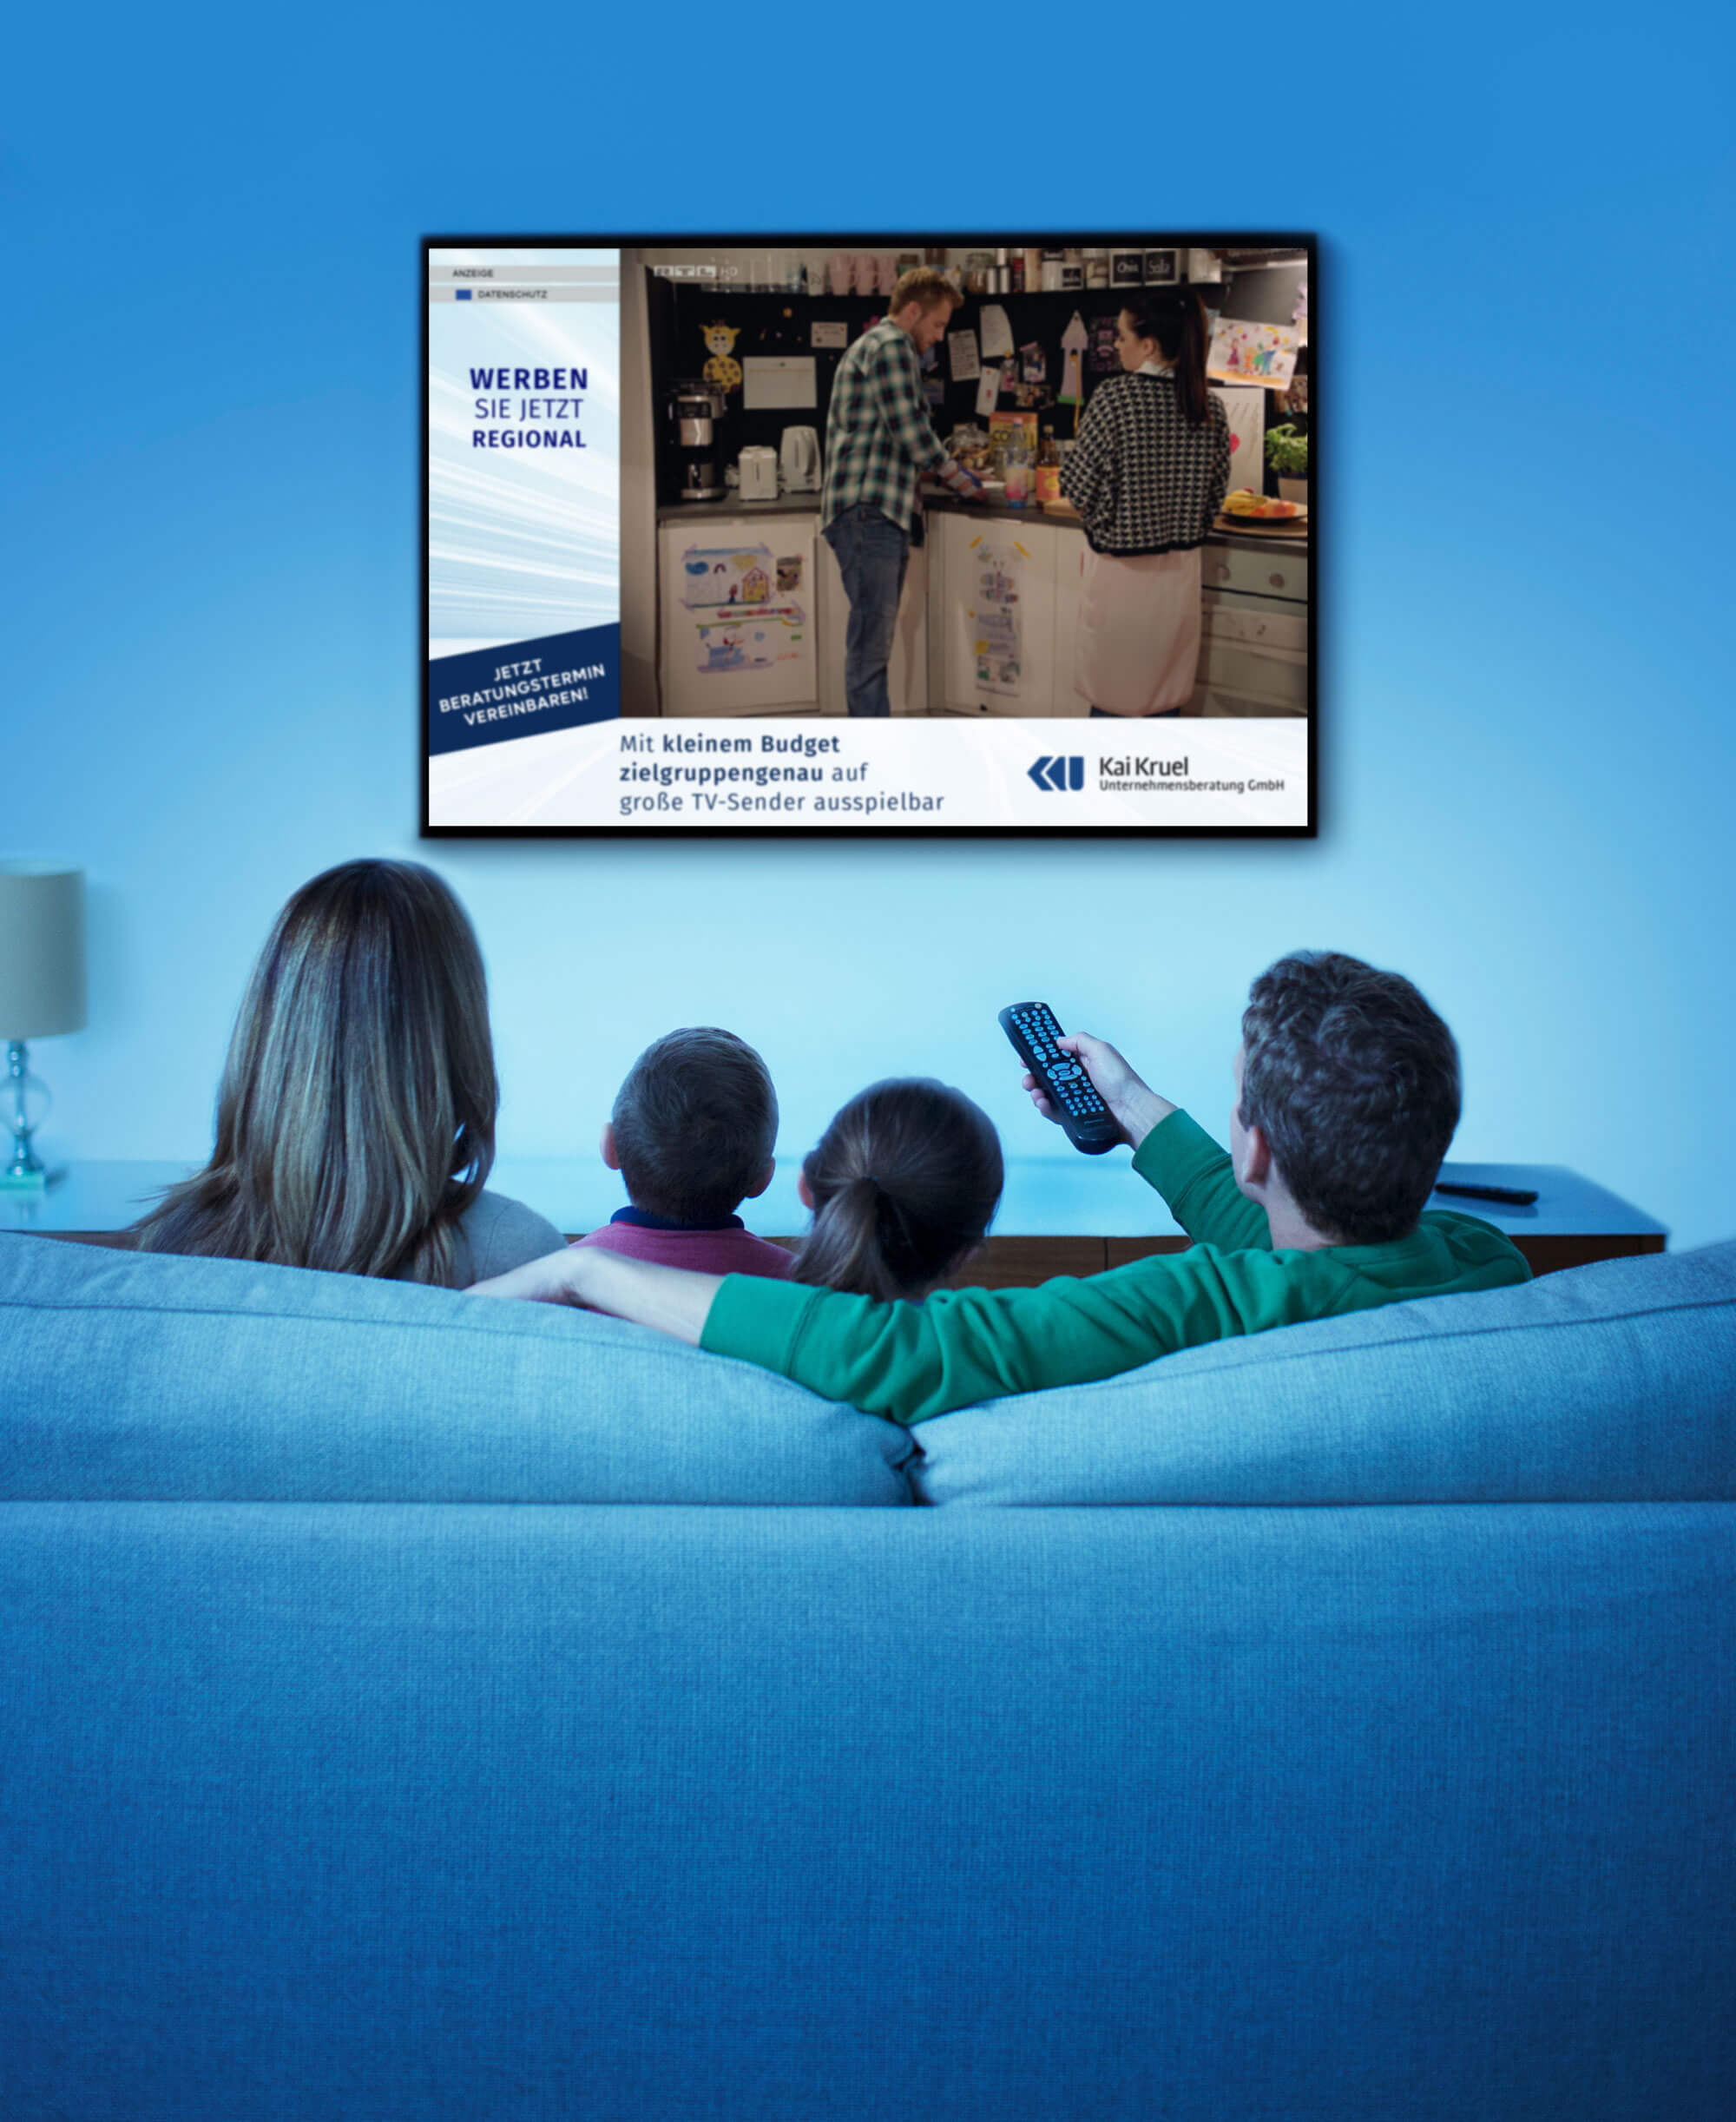 Eine Familie auf der Couch sitzend, sehen einen Addressable TV Spot auf dem Fernseher